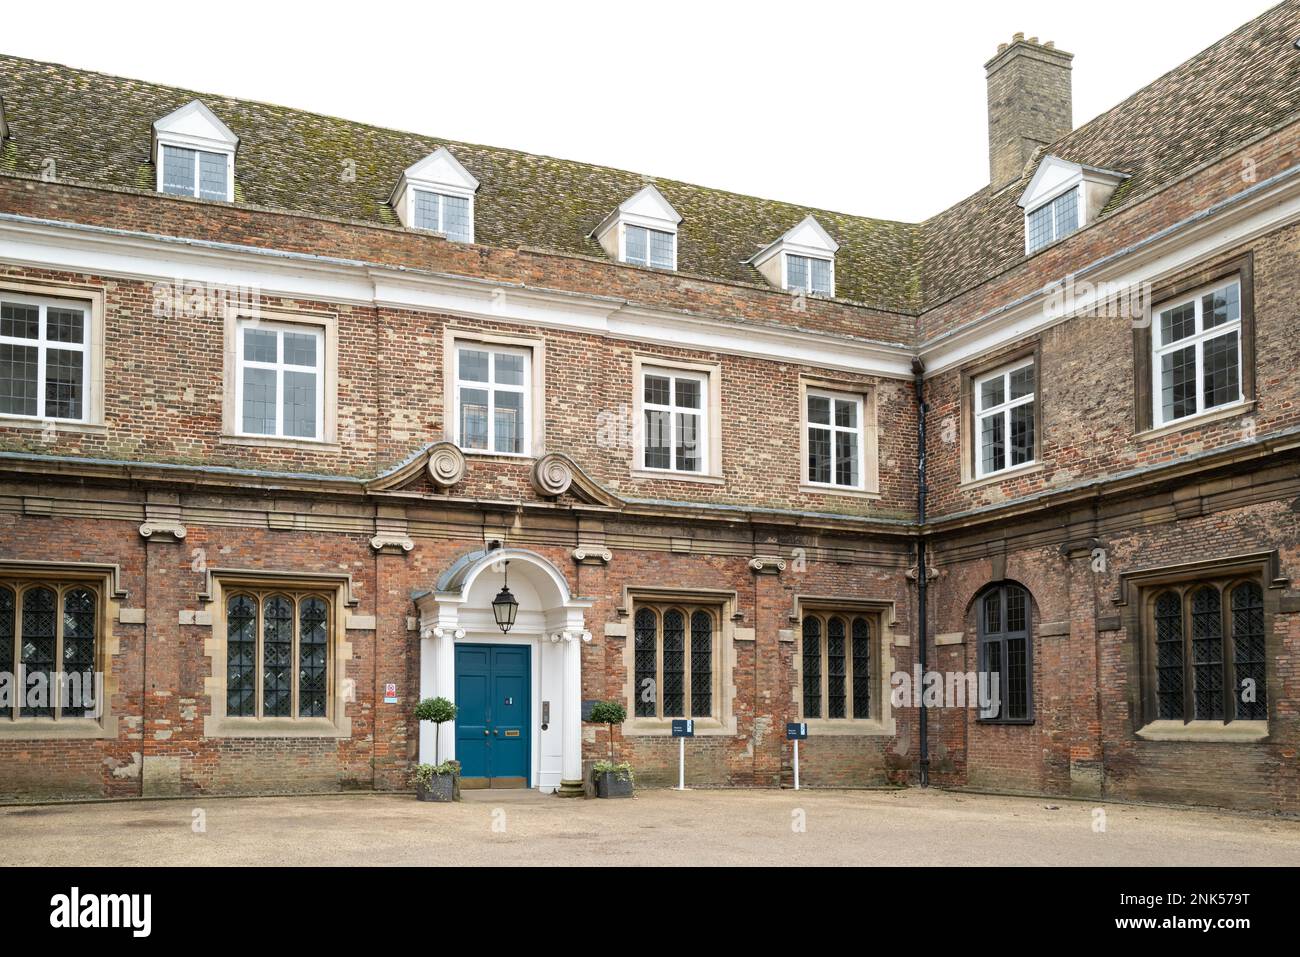 Grande vista sul fronte di una famosa scuola privata nella storica città inglese. Mostra l'area parcheggio designata e la facciata decorata. Foto Stock